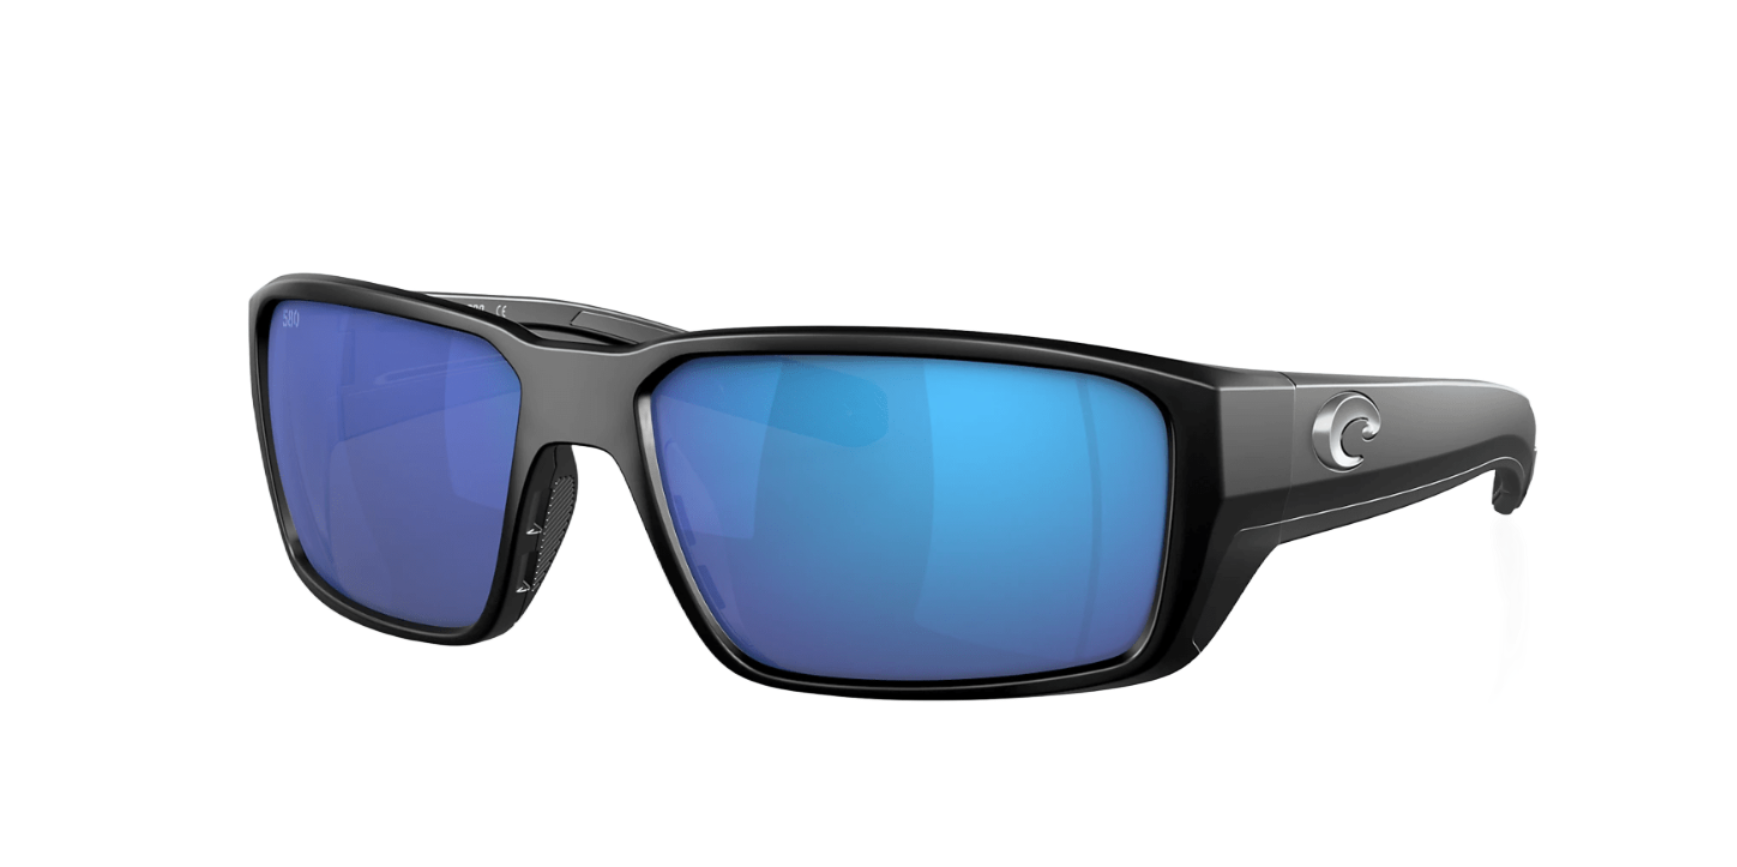 https://www.russells.com/cdn/shop/products/costa-del-mar-sunglasses-matte-black-blue-mirror-costa-del-mar-fantail-pro-matte-black-frame-blue-mirror-lens-sunglasses-35444075266206_5000x.png?v=1712766444